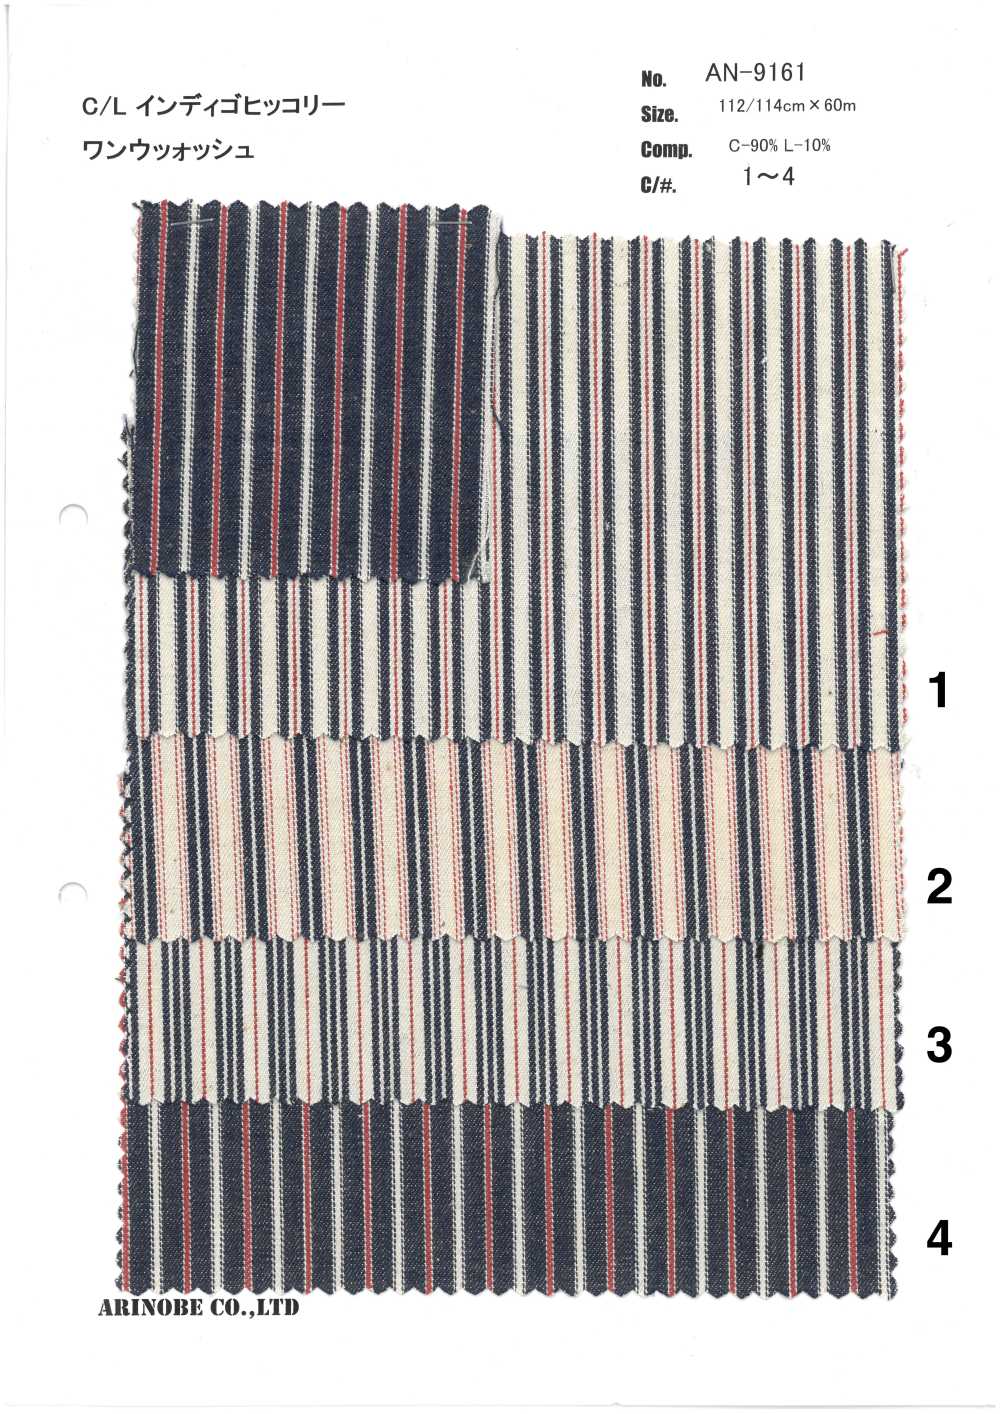 AN-9161 Lin Indigo Hickory[Fabrication De Textile] ARINOBE CO., LTD.